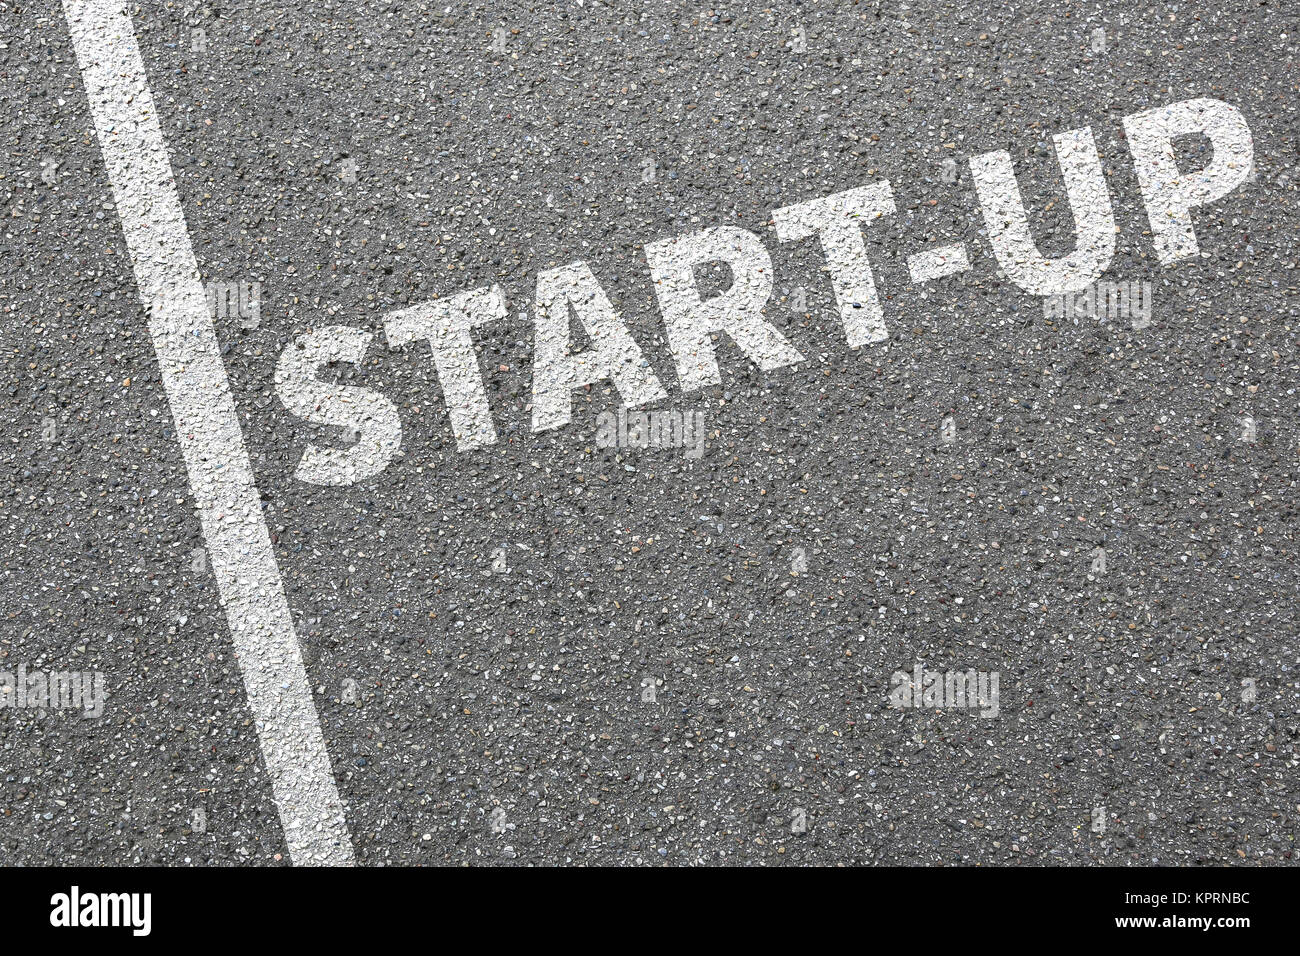 Business Konzept mit Start-up Startup Gründung eines Unternehmen Firma Foto Stock